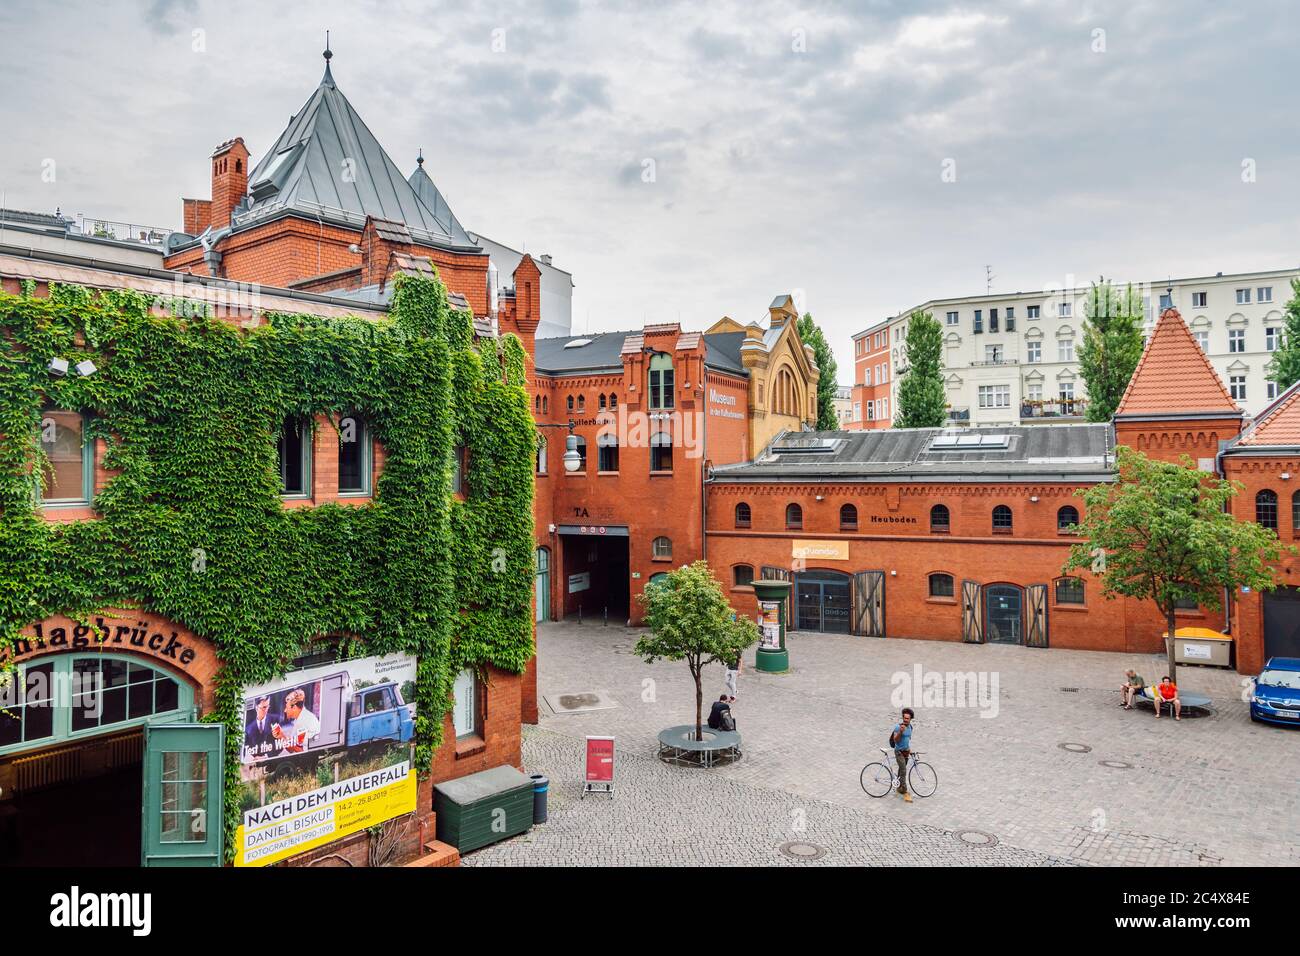 Centro Culturale, Kulturbrauerei. Originariamente costruito come birreria, è uno dei pochi esempi ben conservati di architettura industriale a Berlino. Foto Stock